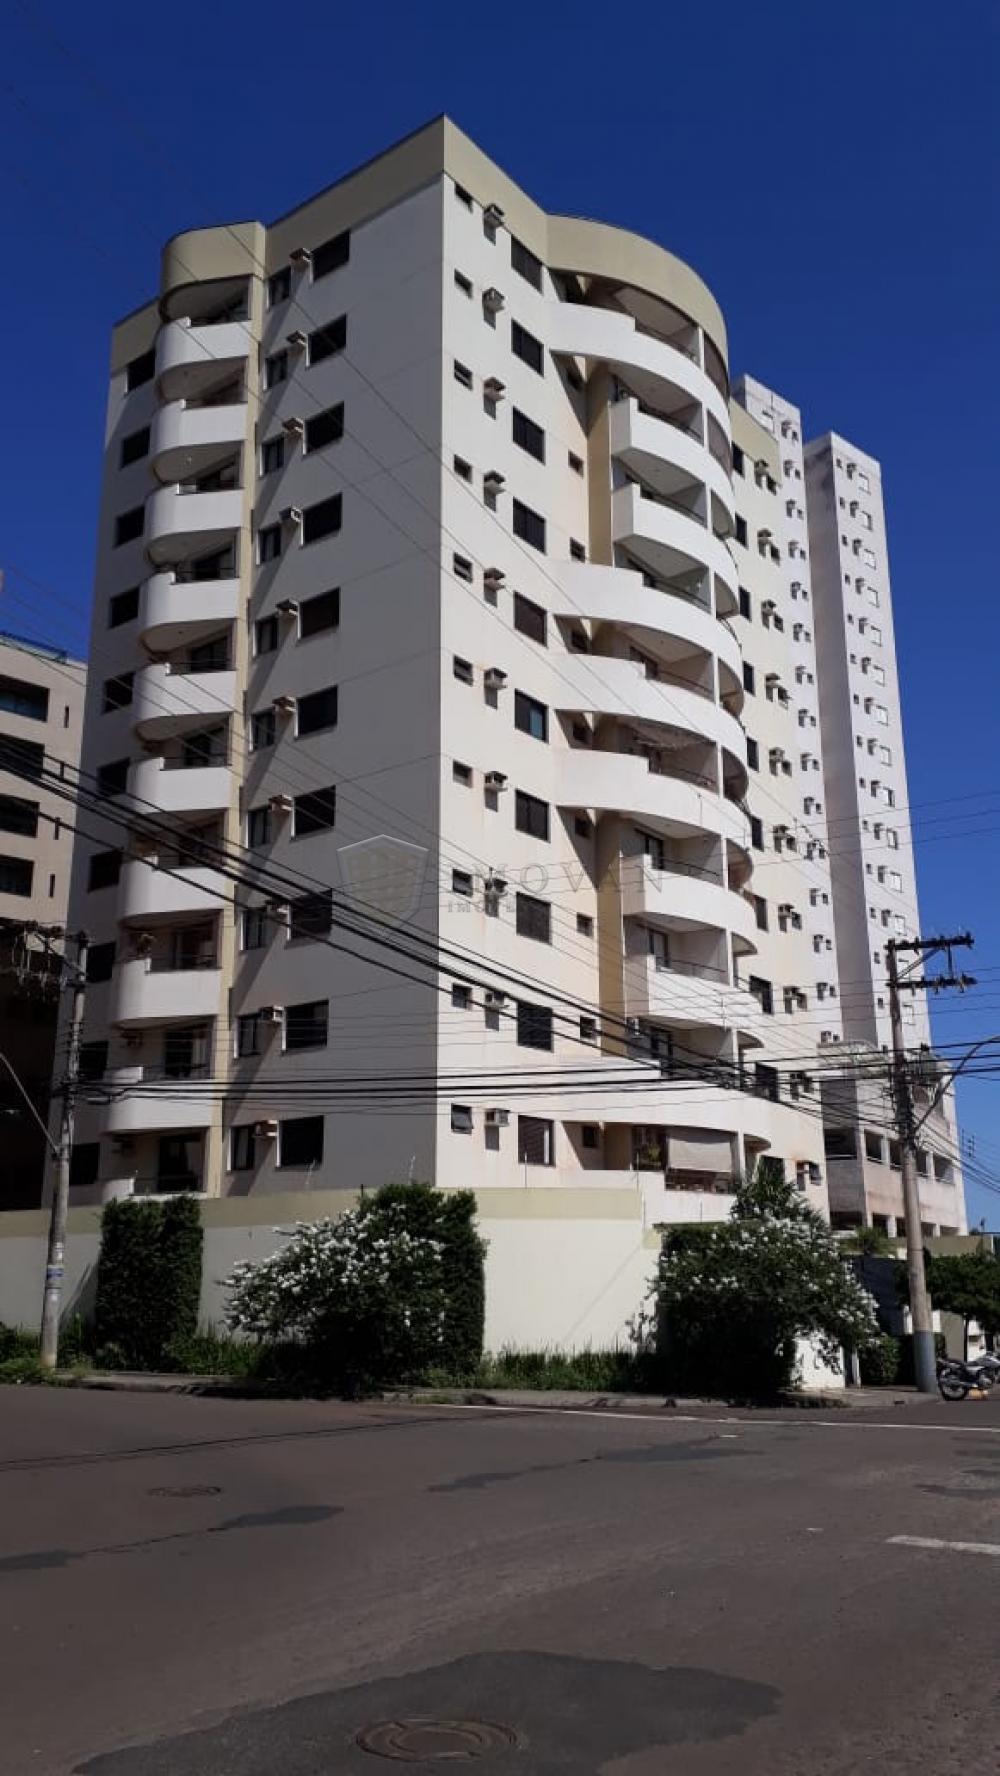 Alugar Apartamento / Padrão em Ribeirão Preto R$ 1.400,00 - Foto 2